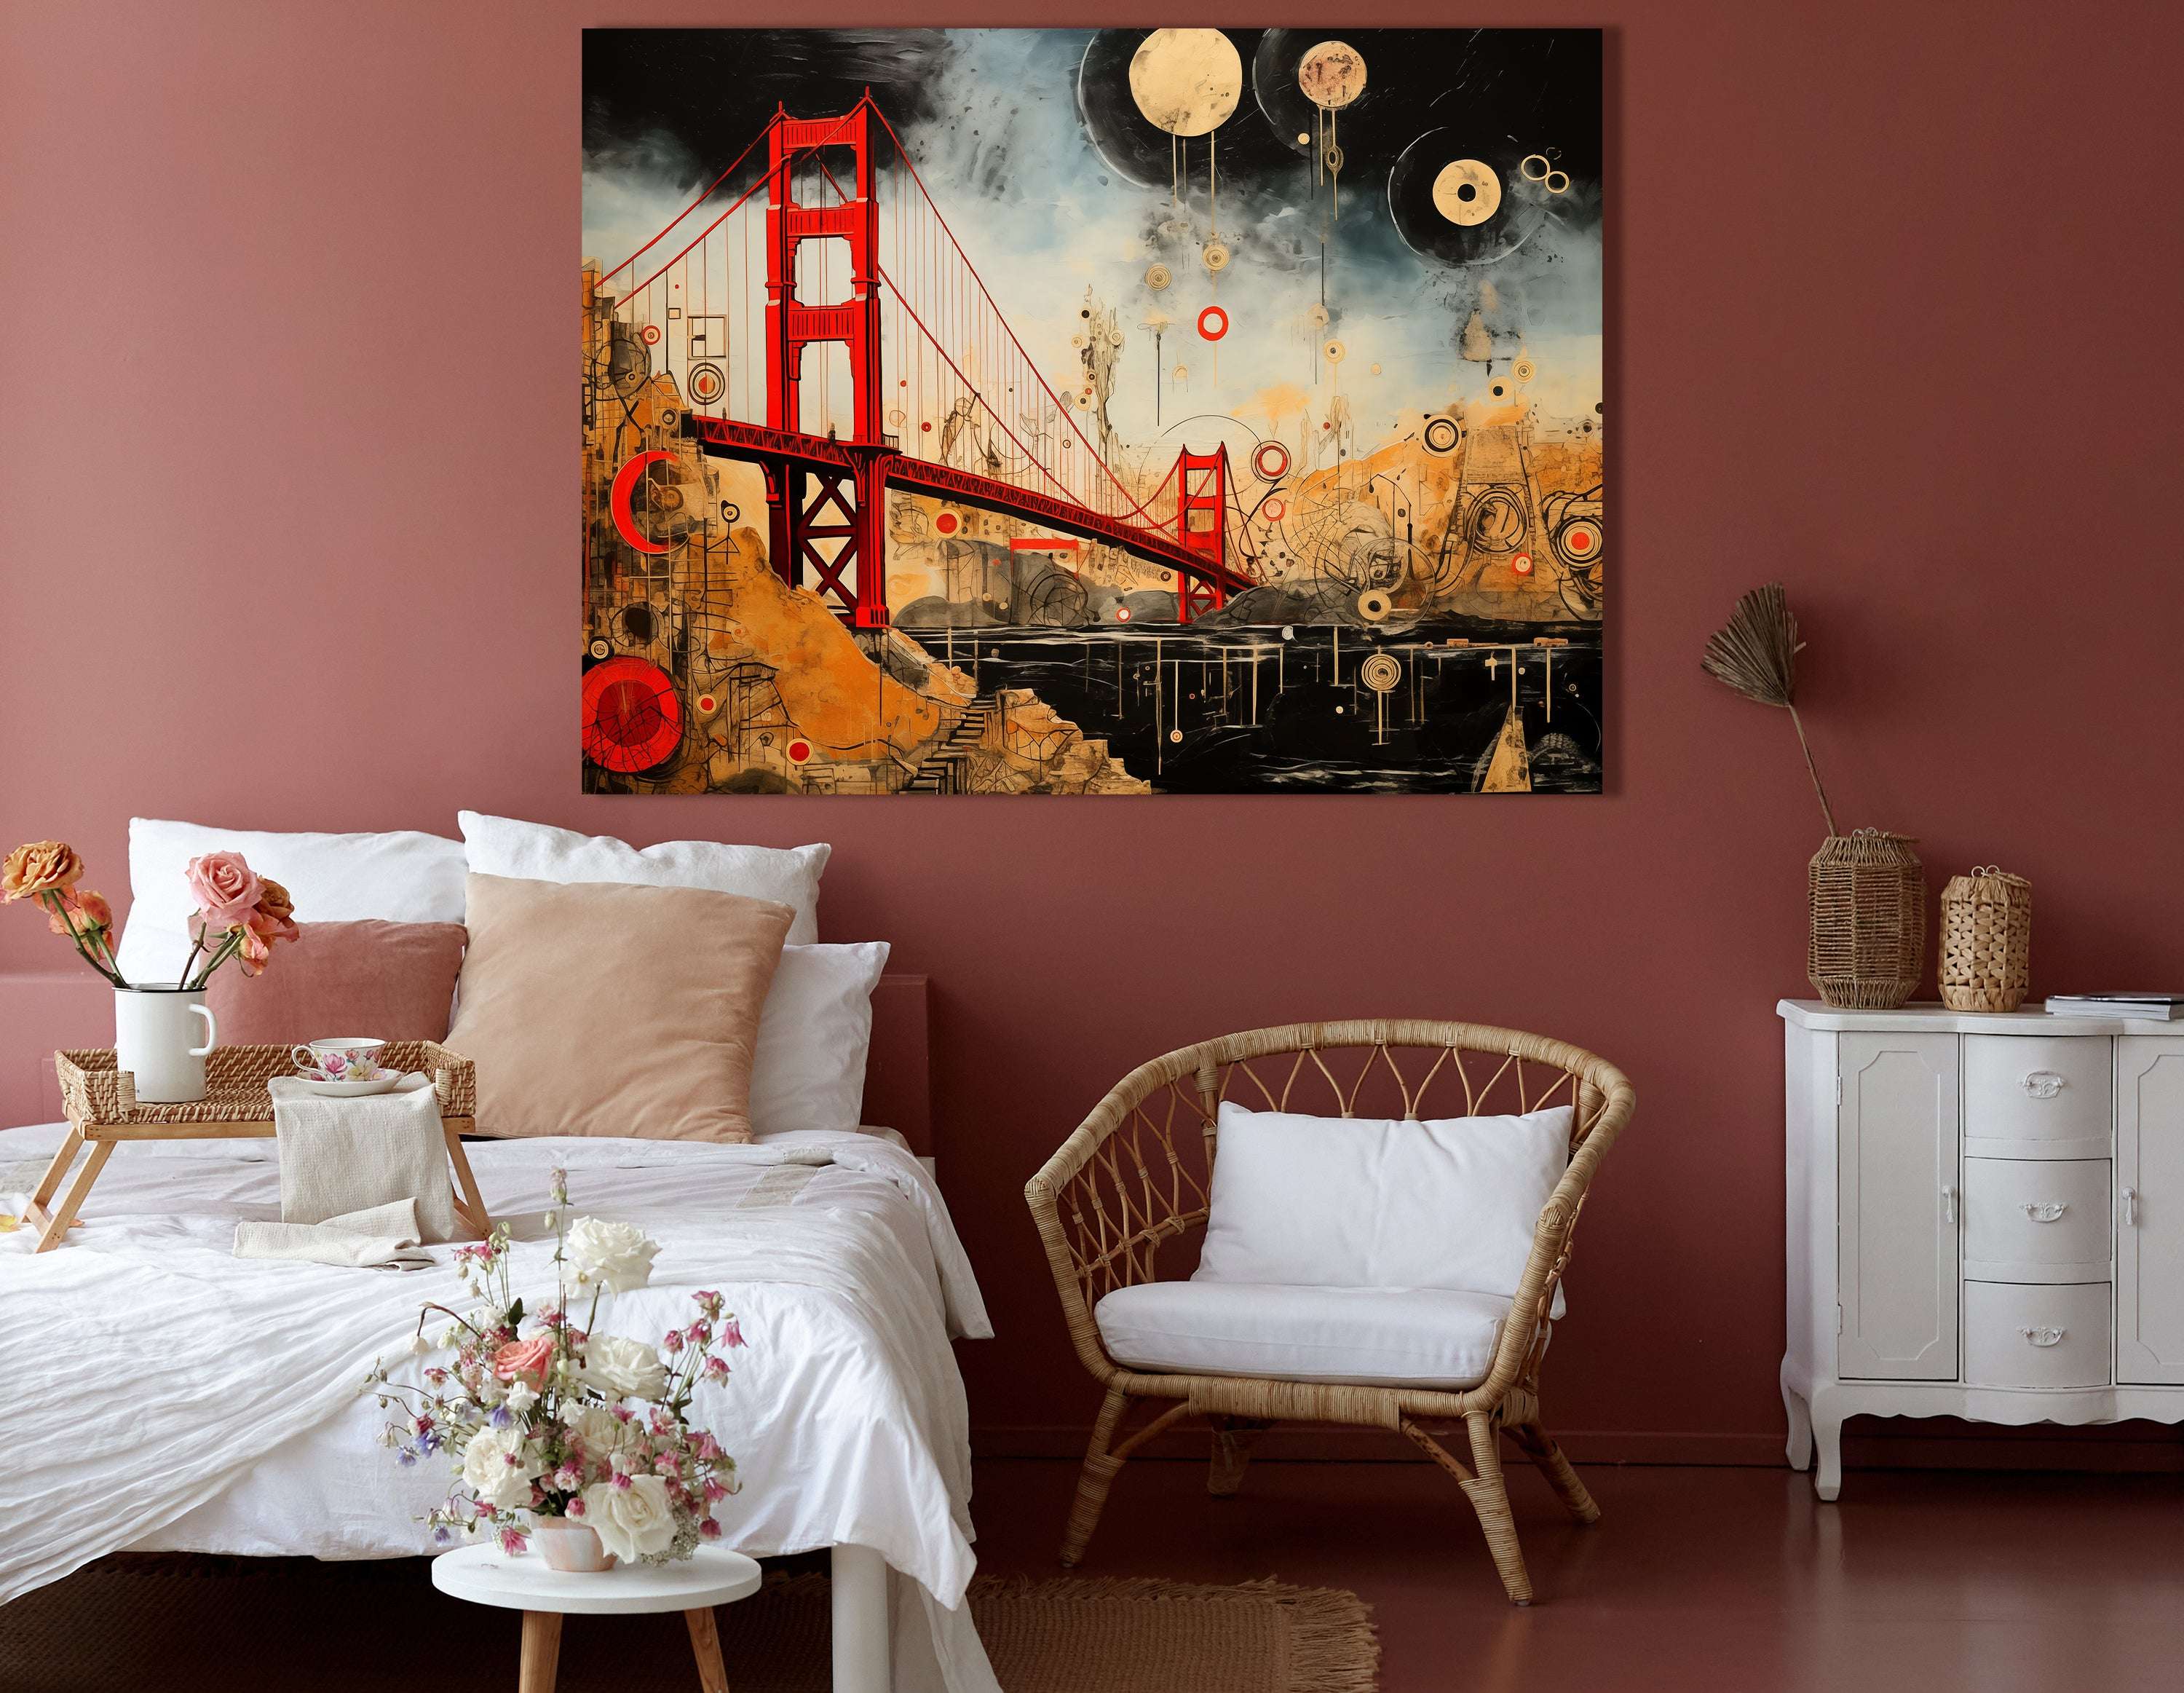 Abstract Celestial Golden Gate Bridge - Canvas Print - Artoholica Ready to Hang Canvas Print